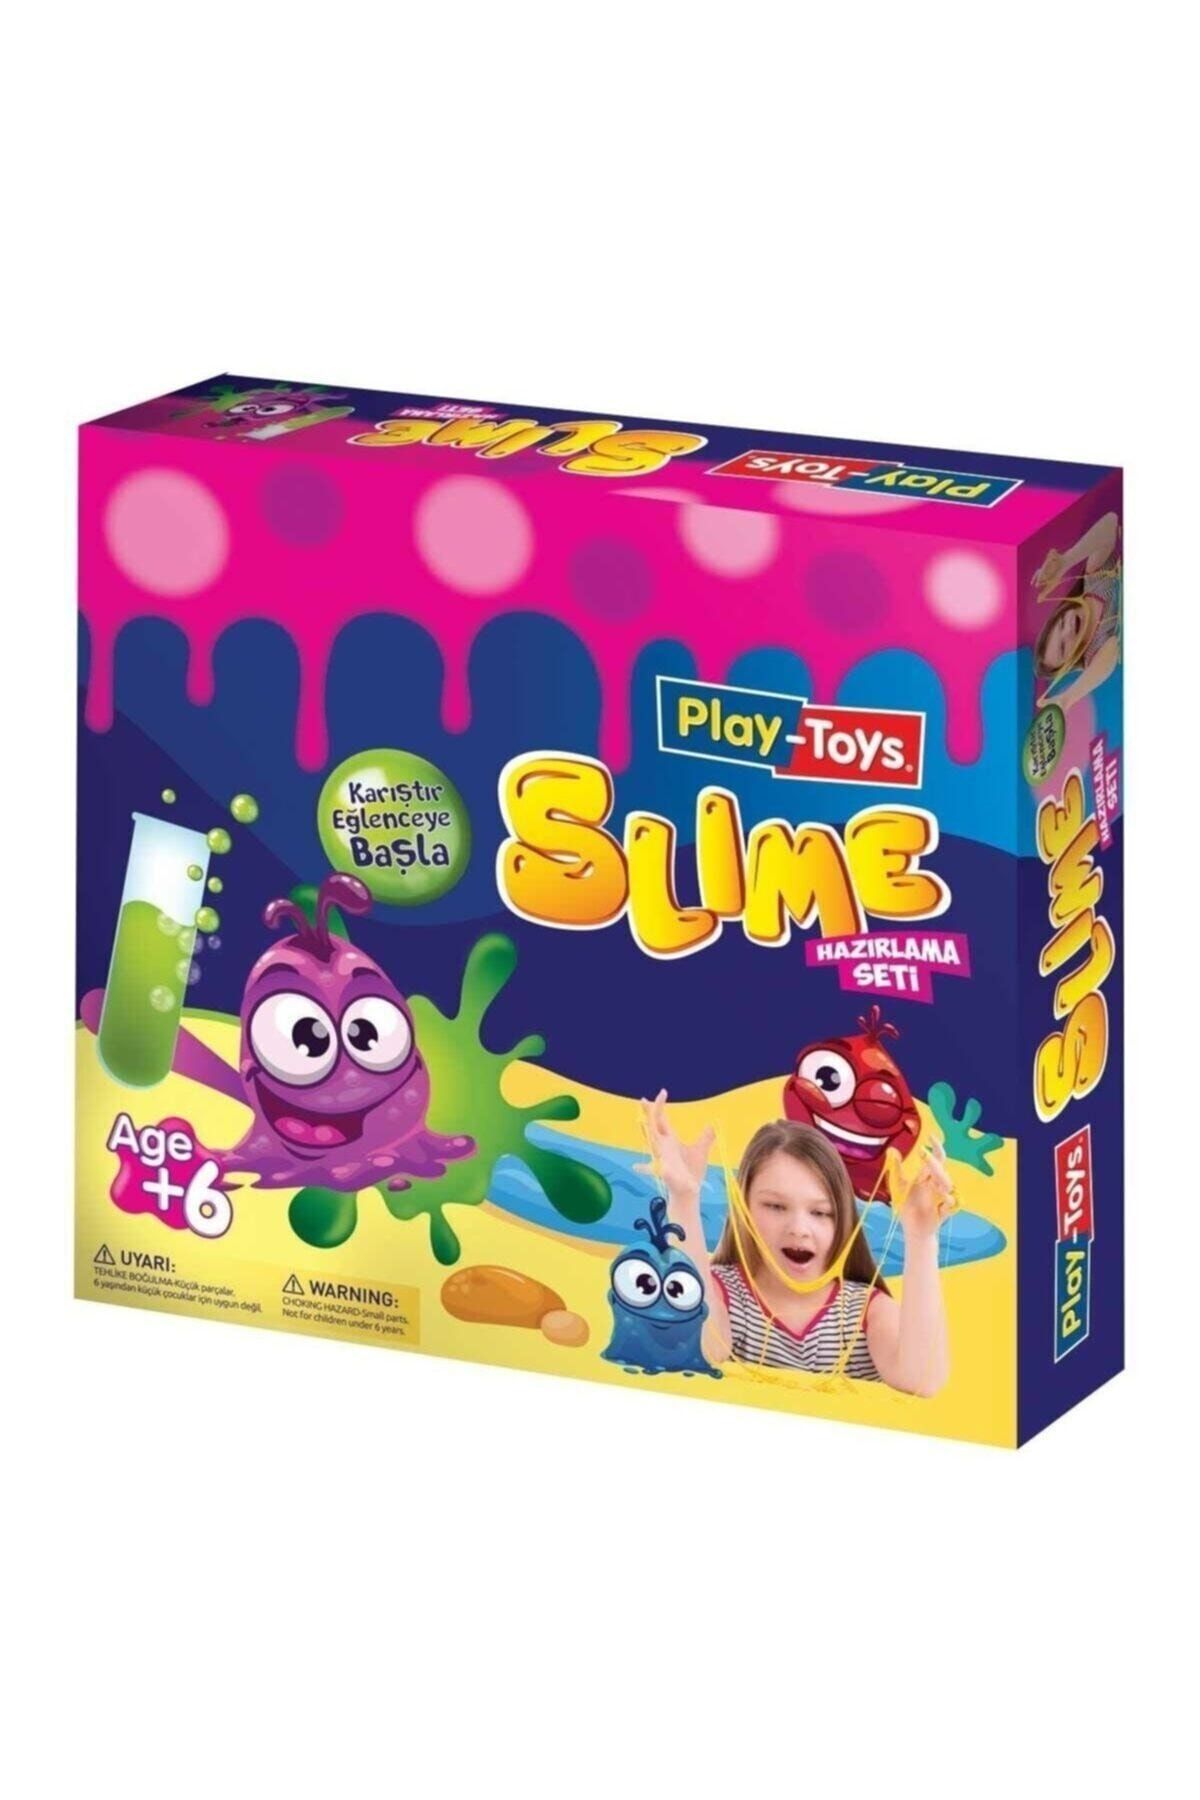 Play Toys Slime Hazırlama Seti